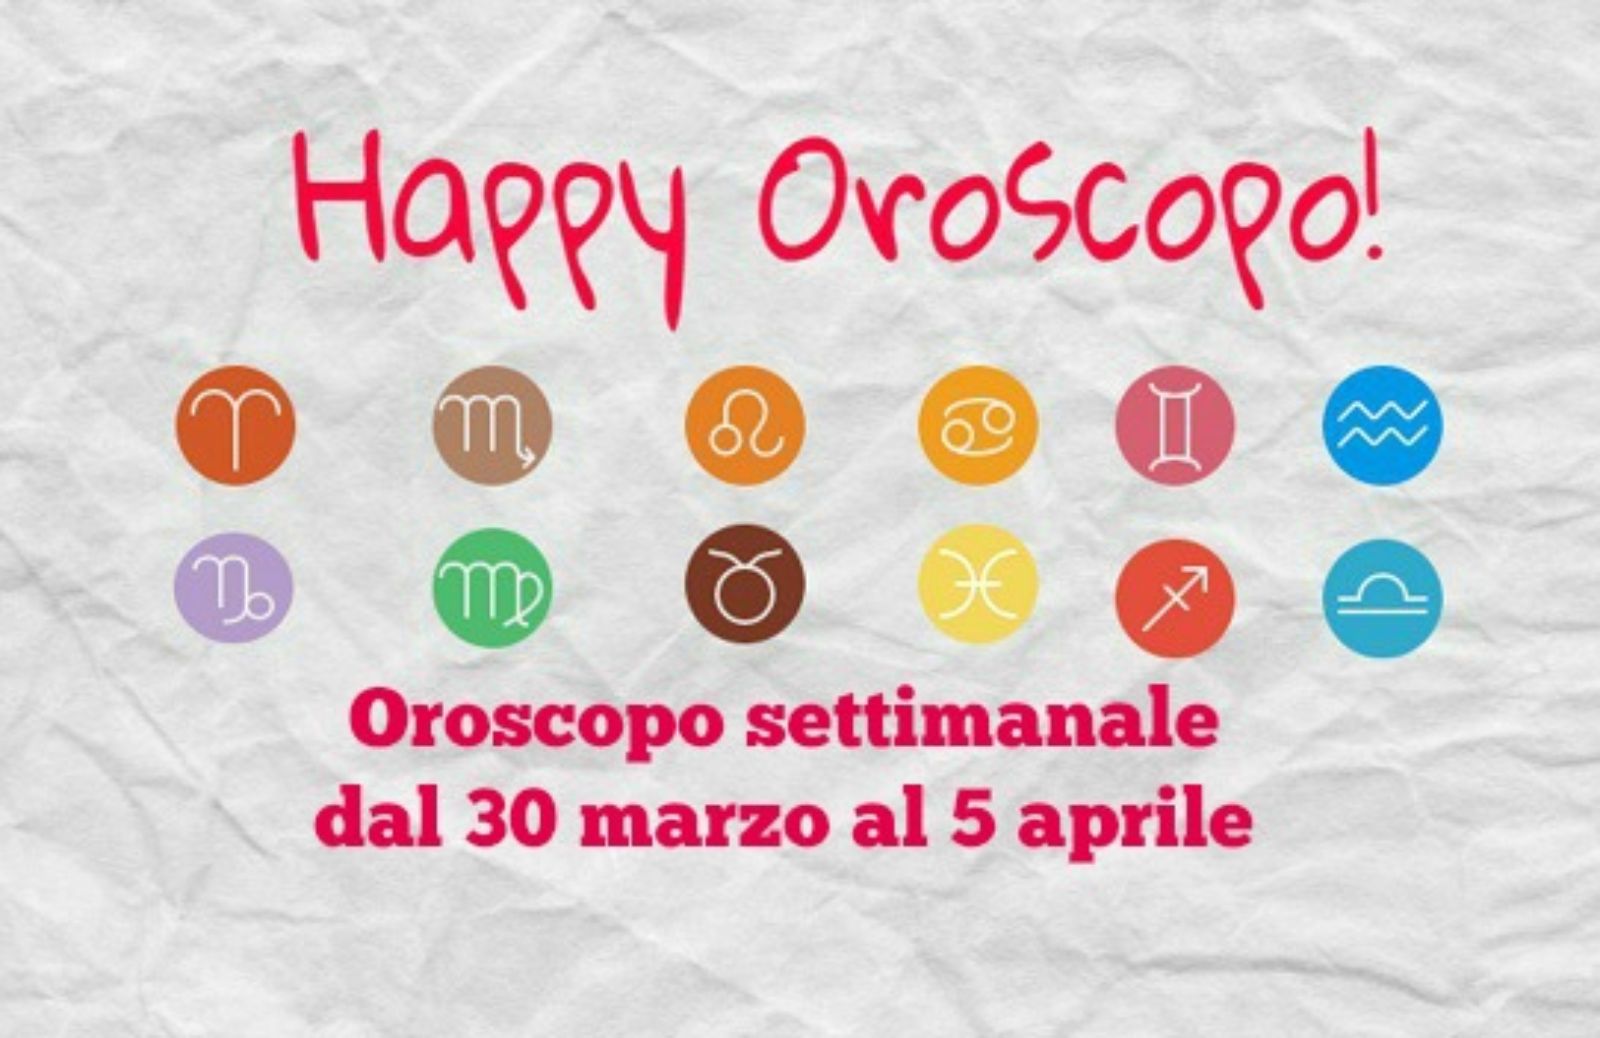 Happy oroscopo della settimana: cosa dicono le stelle dal 30 marzo al 5 aprile